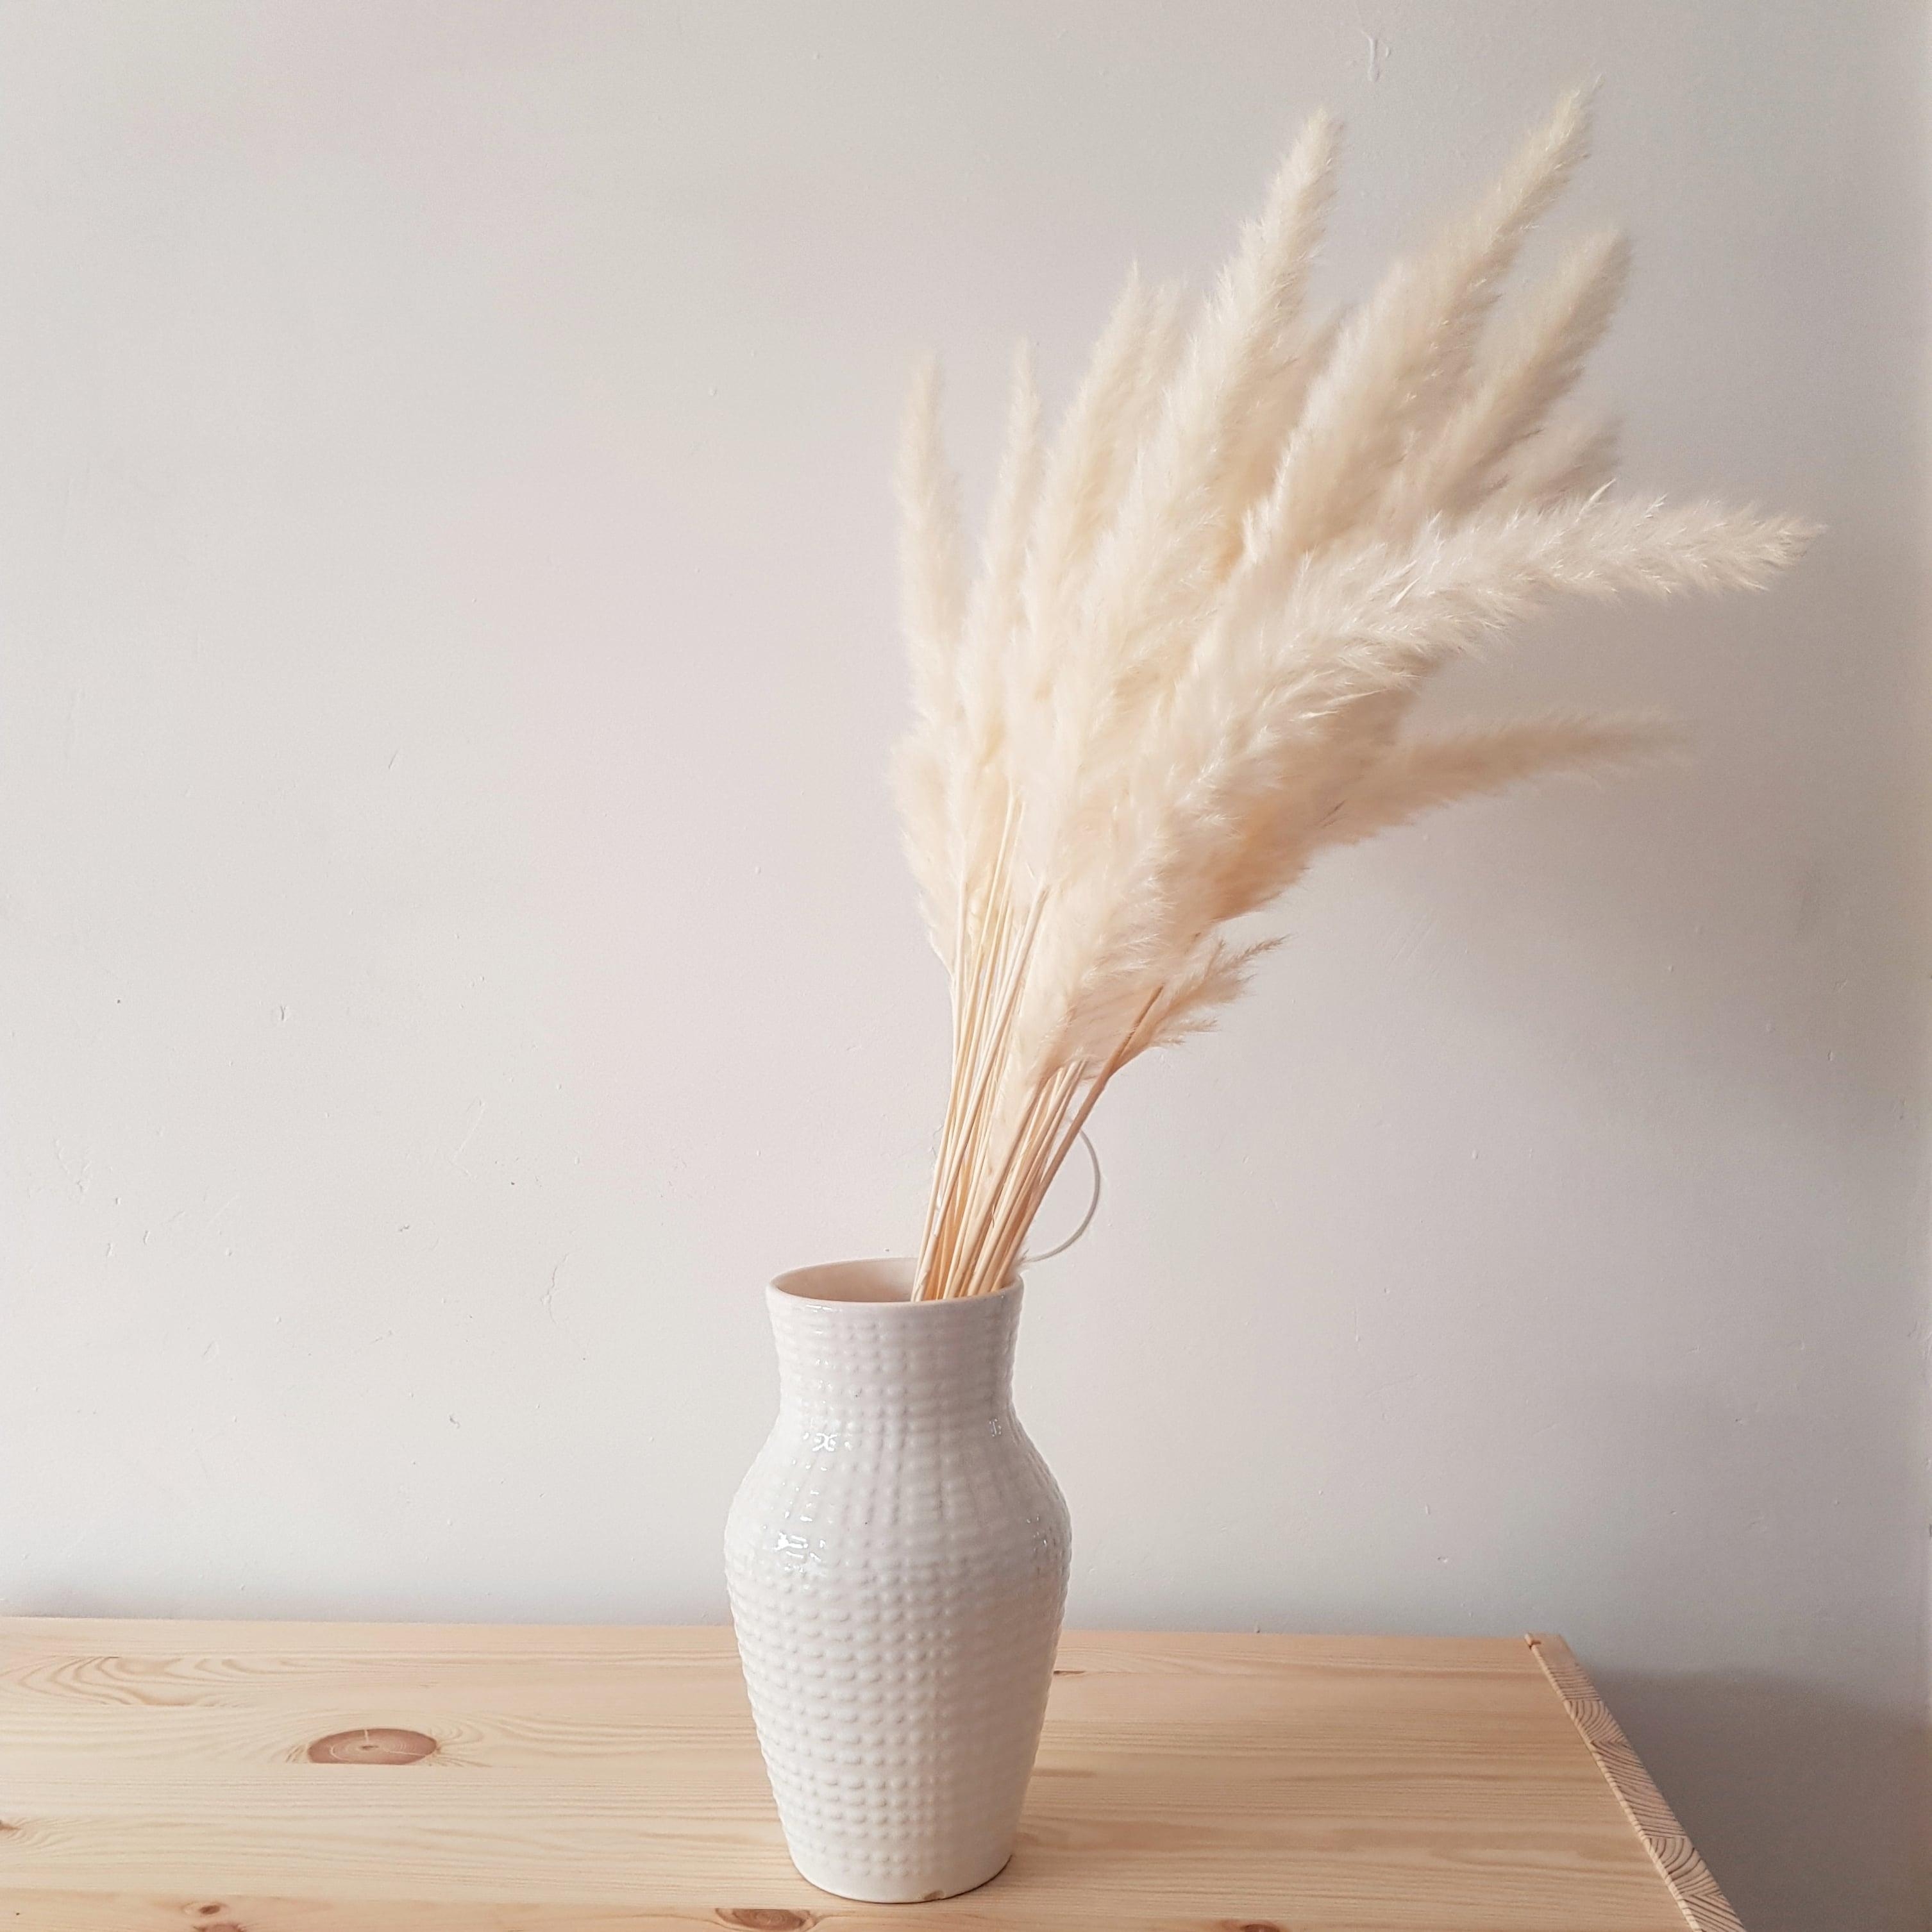 Omas #Vase & #Pampasgras = Dreamteam 💕.
#boho #naturtöne #natürlichwohnen